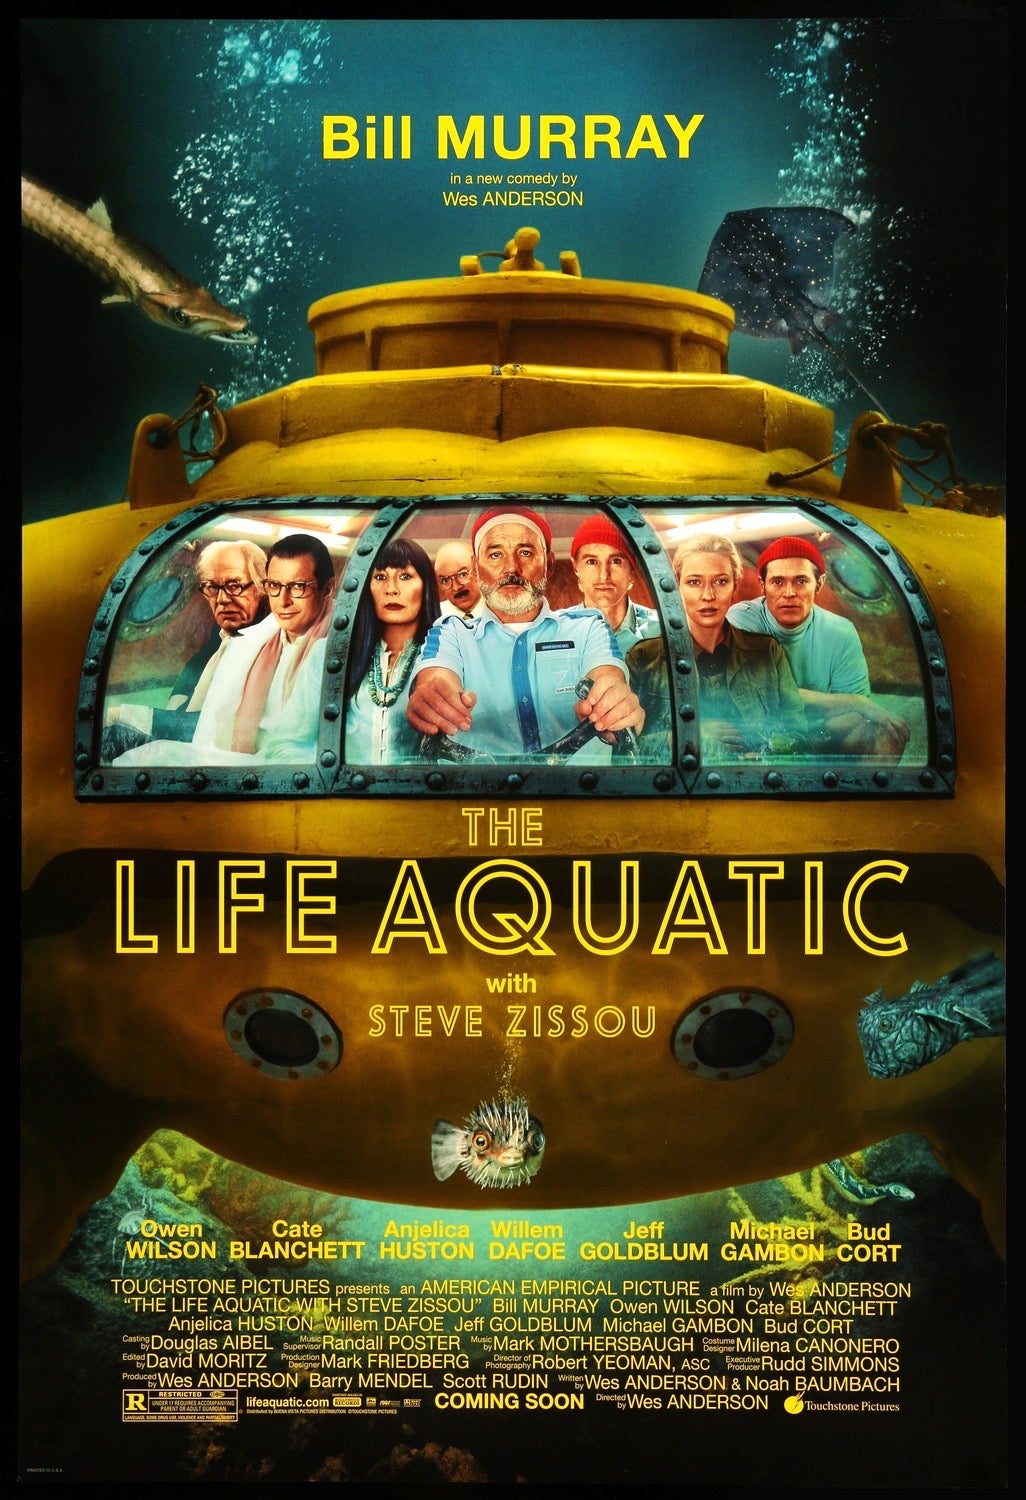 Life Aquatic with Steve Zissou (2004) original movie poster for sale at Original Film Art